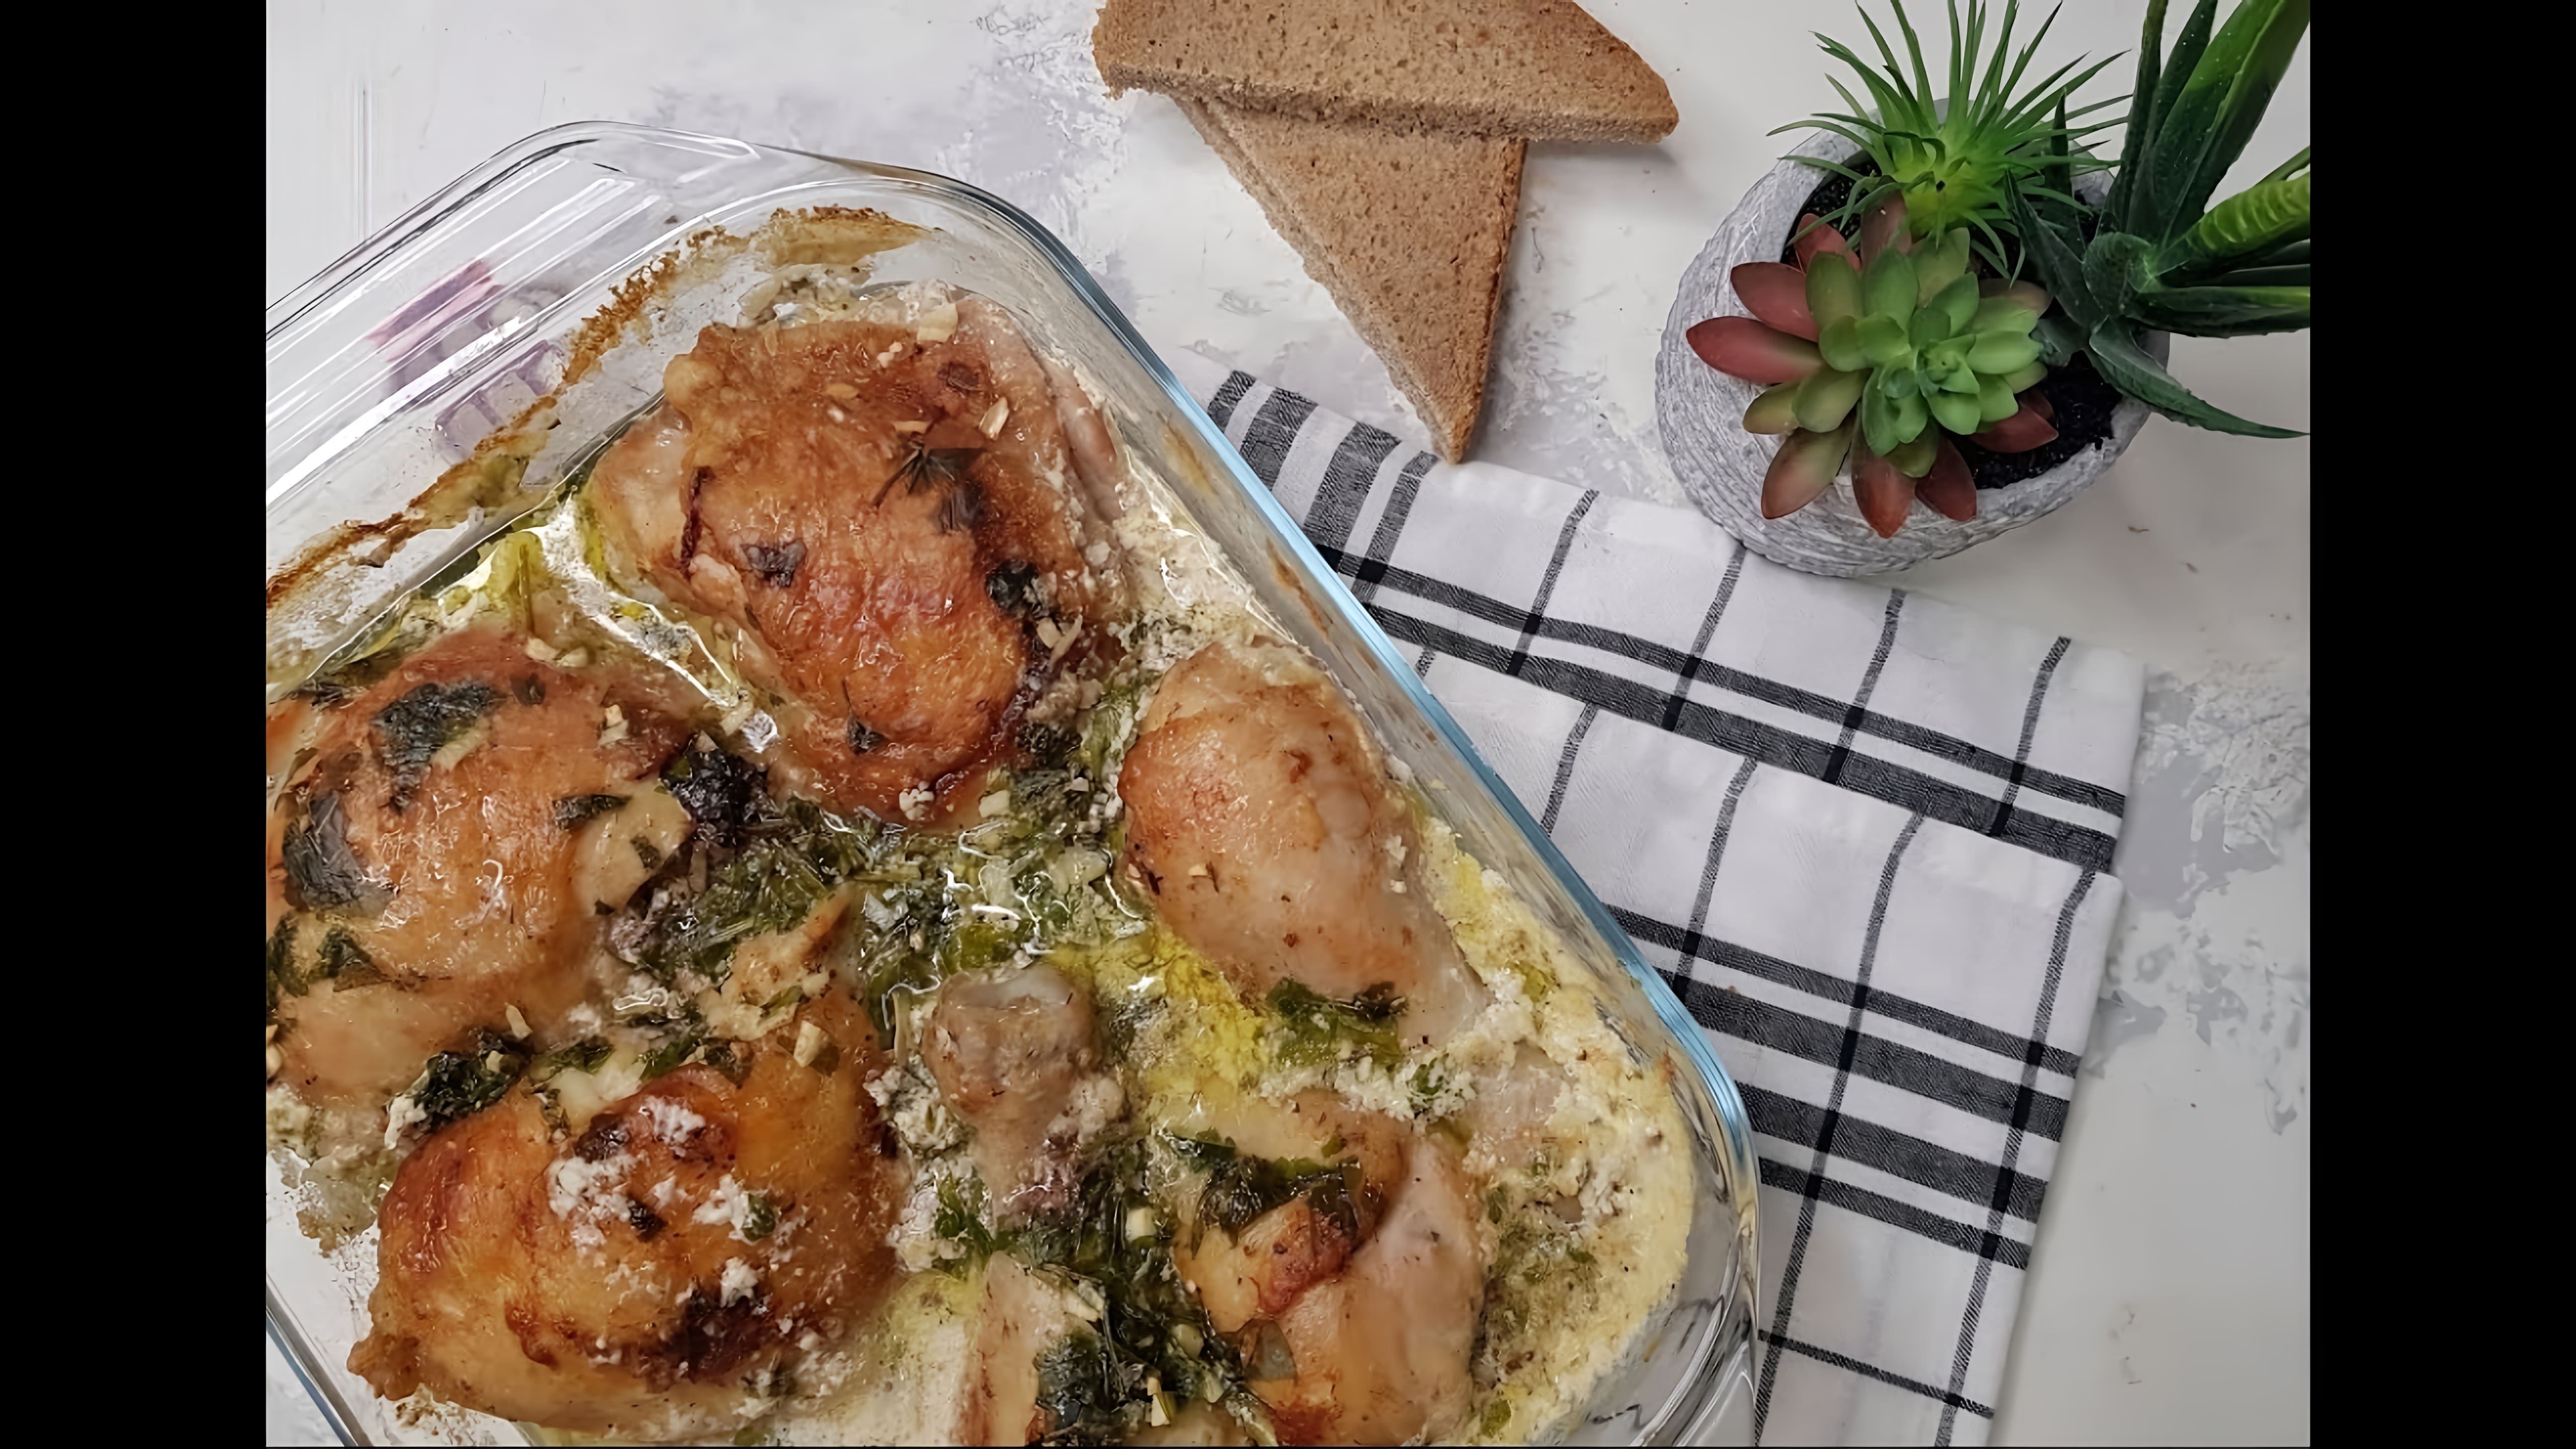 В этом видео демонстрируется рецепт приготовления грузинского блюда ЧКМЕРУЛИ - курицы по-грузински